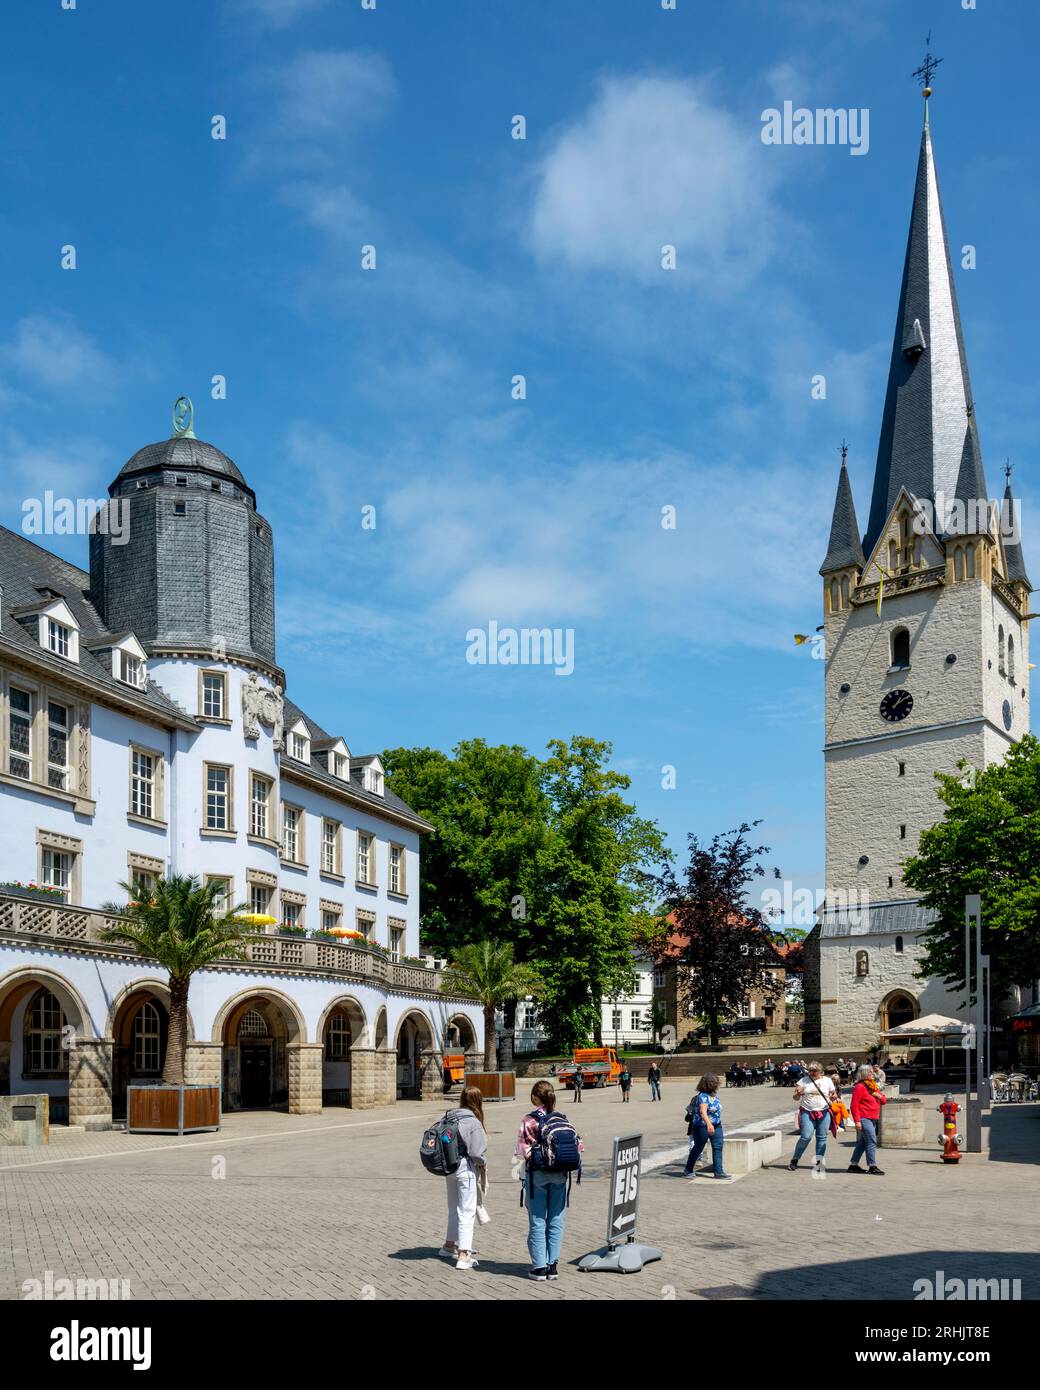 Deutschland, NRW, Märkischer Kreis, Menden, Marktplatz von Menden mit Altem Rathaus und St.-Vincenz-Kirche Stock Photo